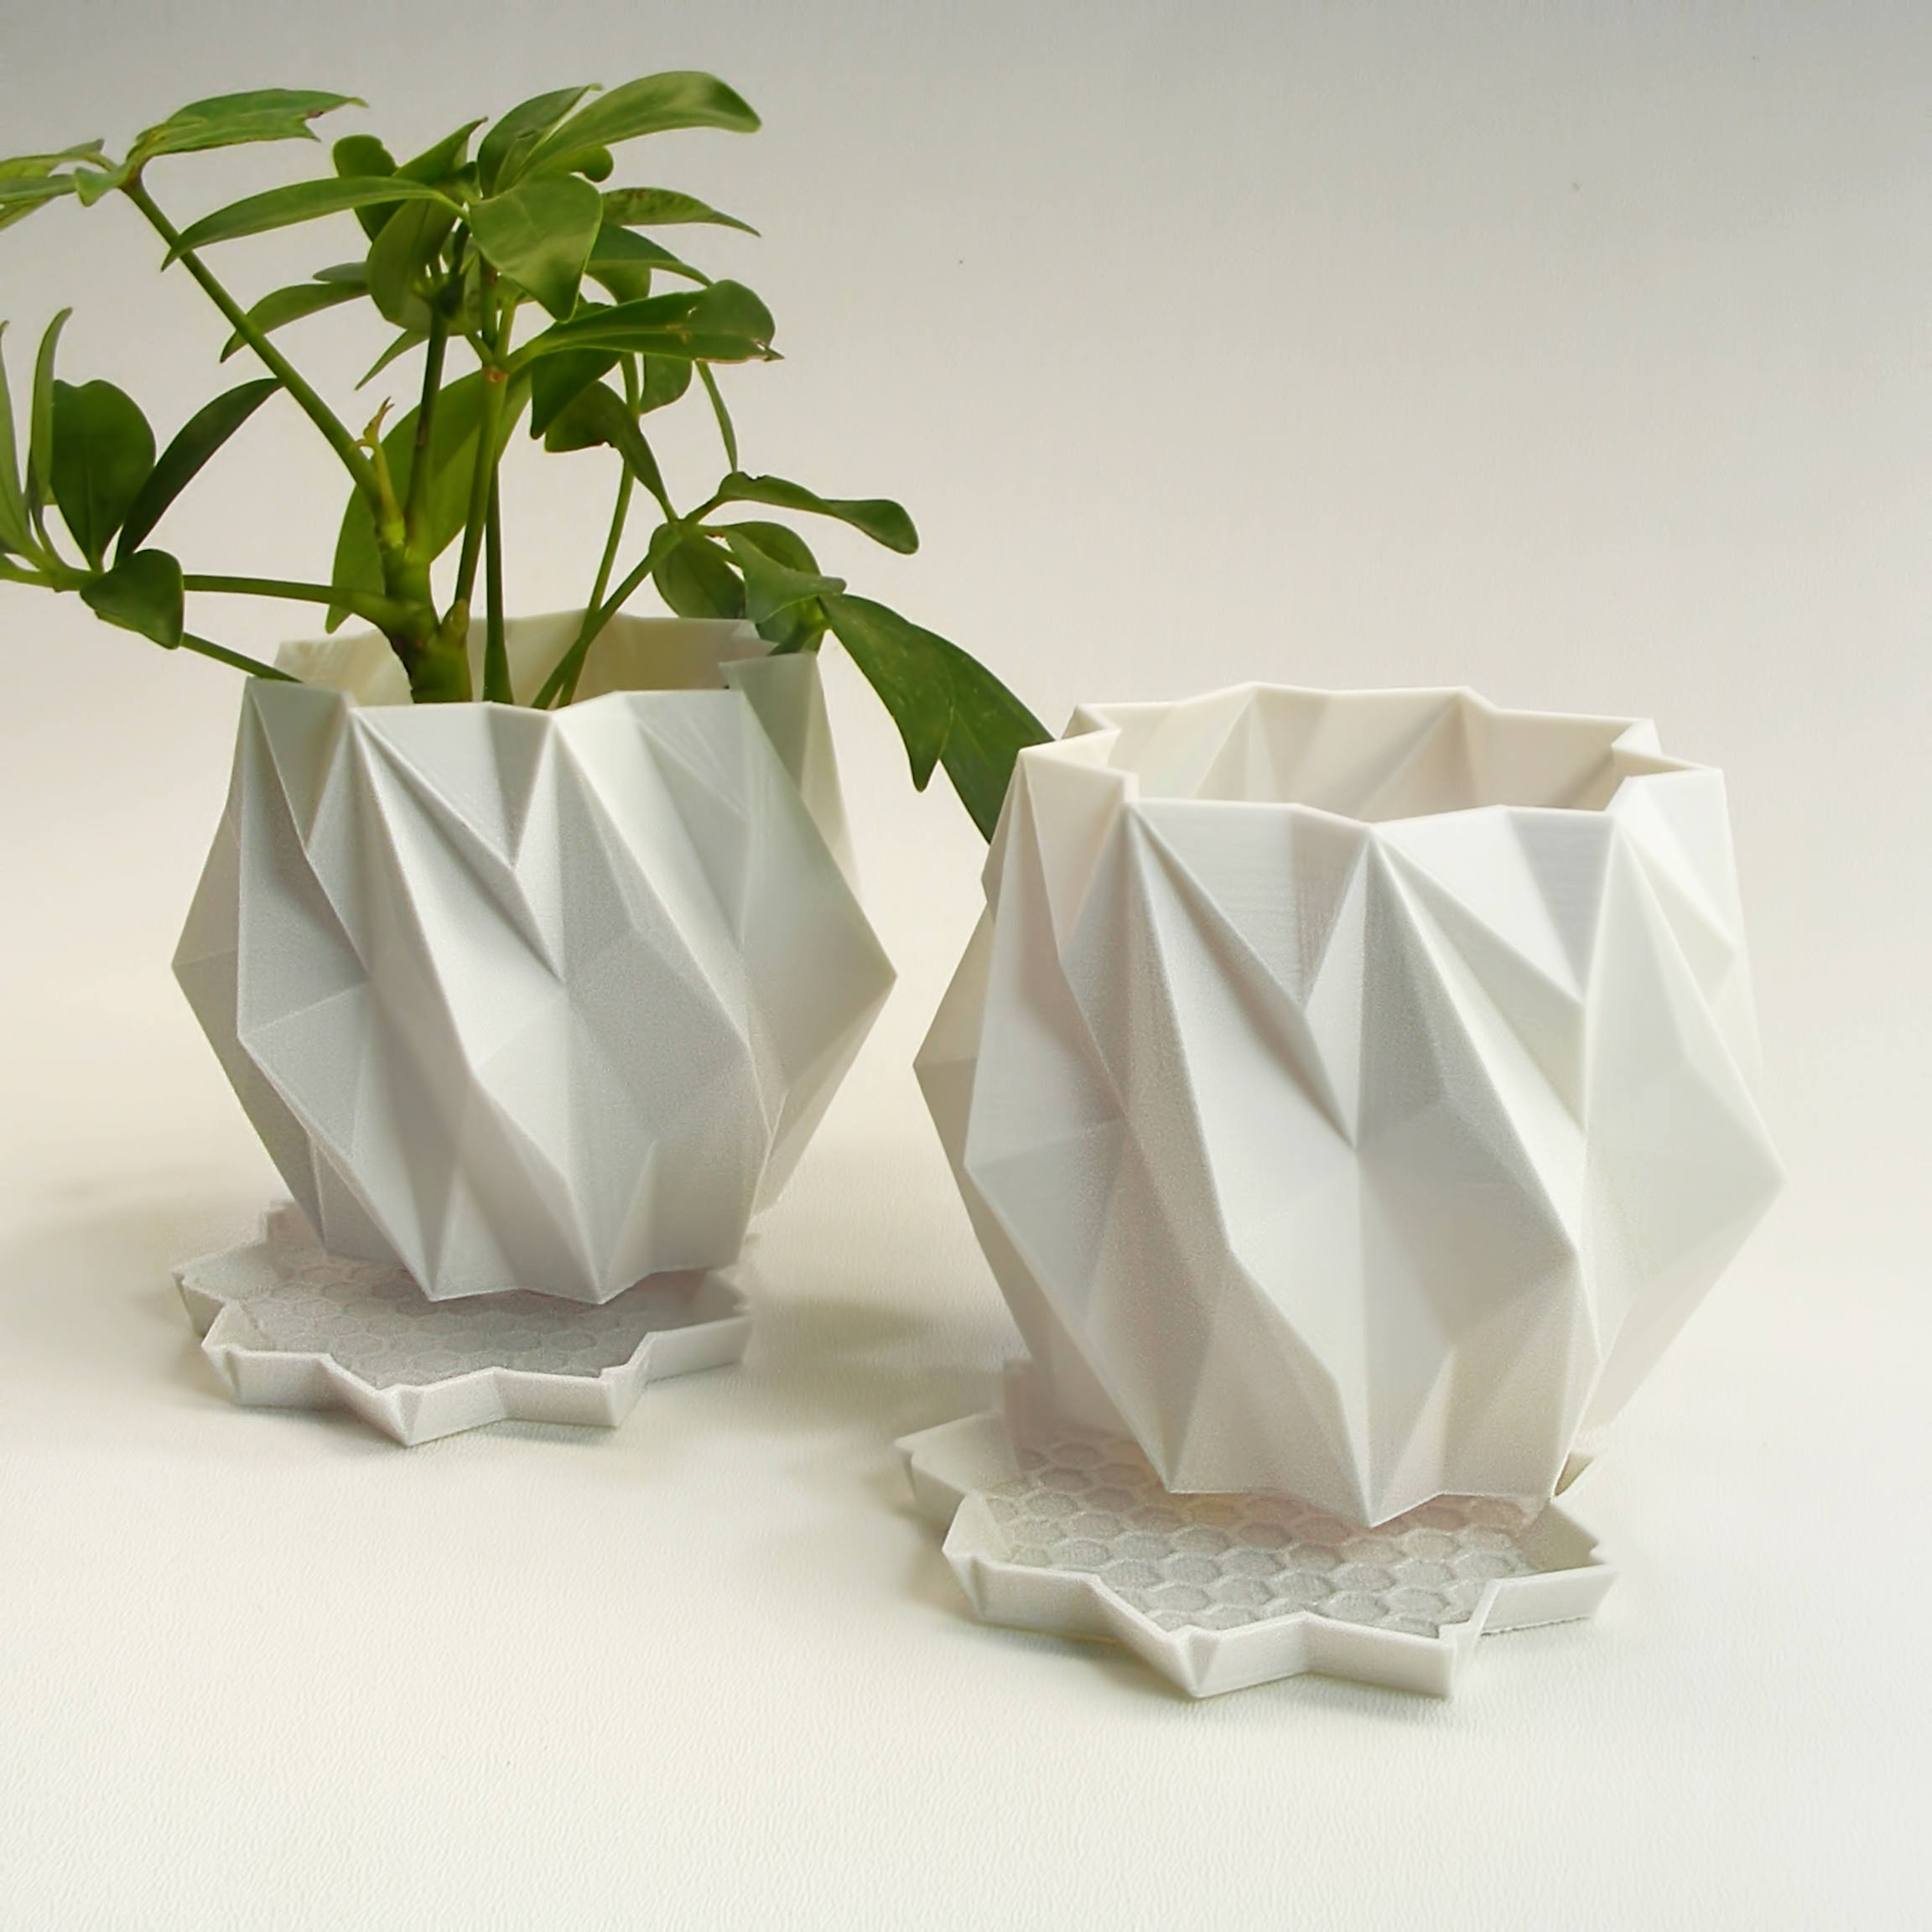 3D Origami Flower Pot 35 Inch Modern Planter Set With Trays 3d Abstract Art Flower Pot Set Of 2 3d Art Pots Flower Art Abstract Flower Pot